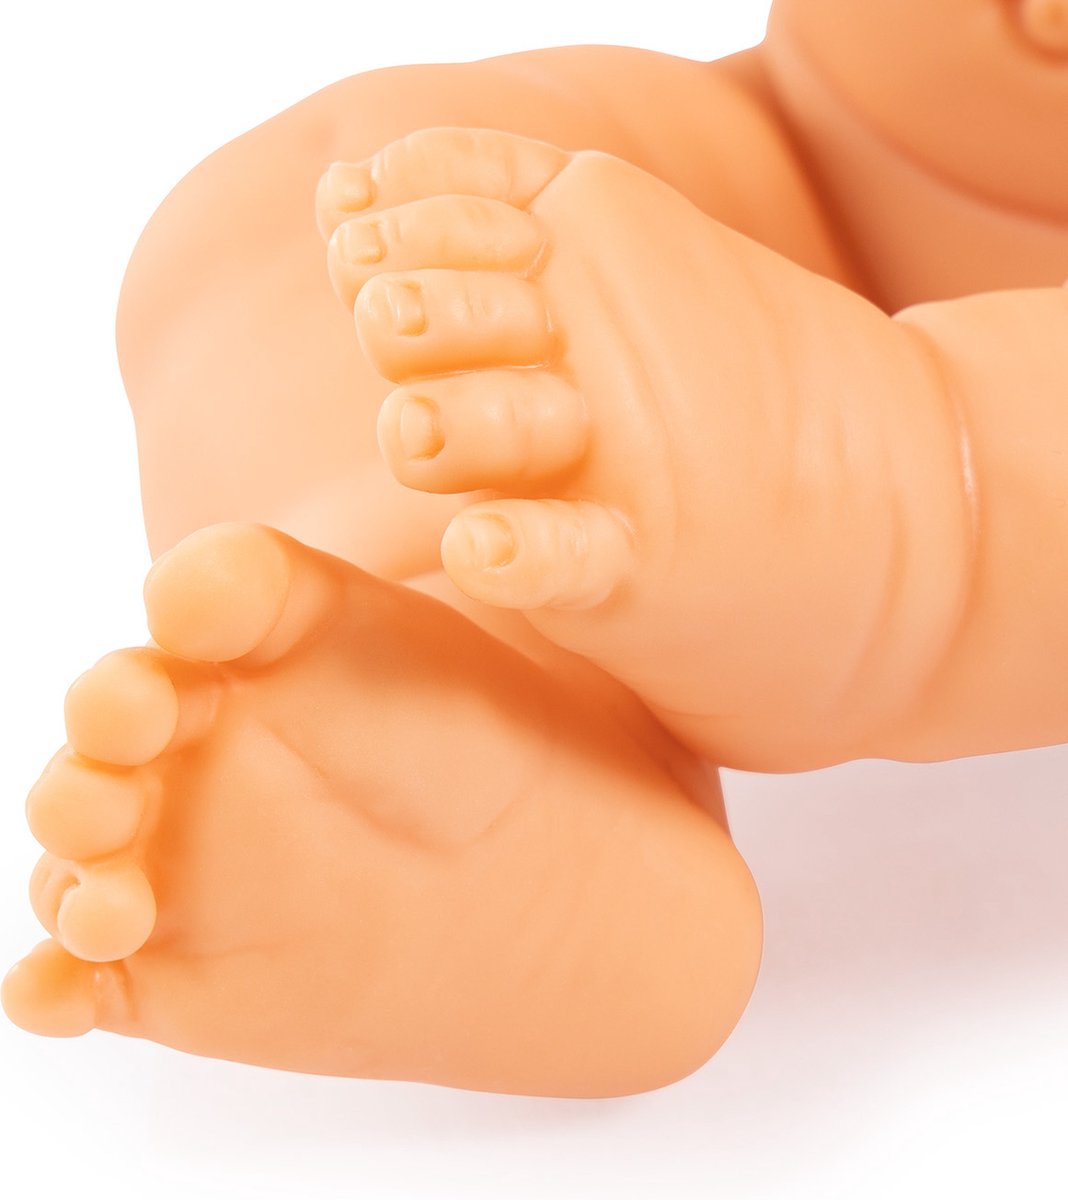 Bayer Babypop Newborn Girl 42 Cm - Bruin